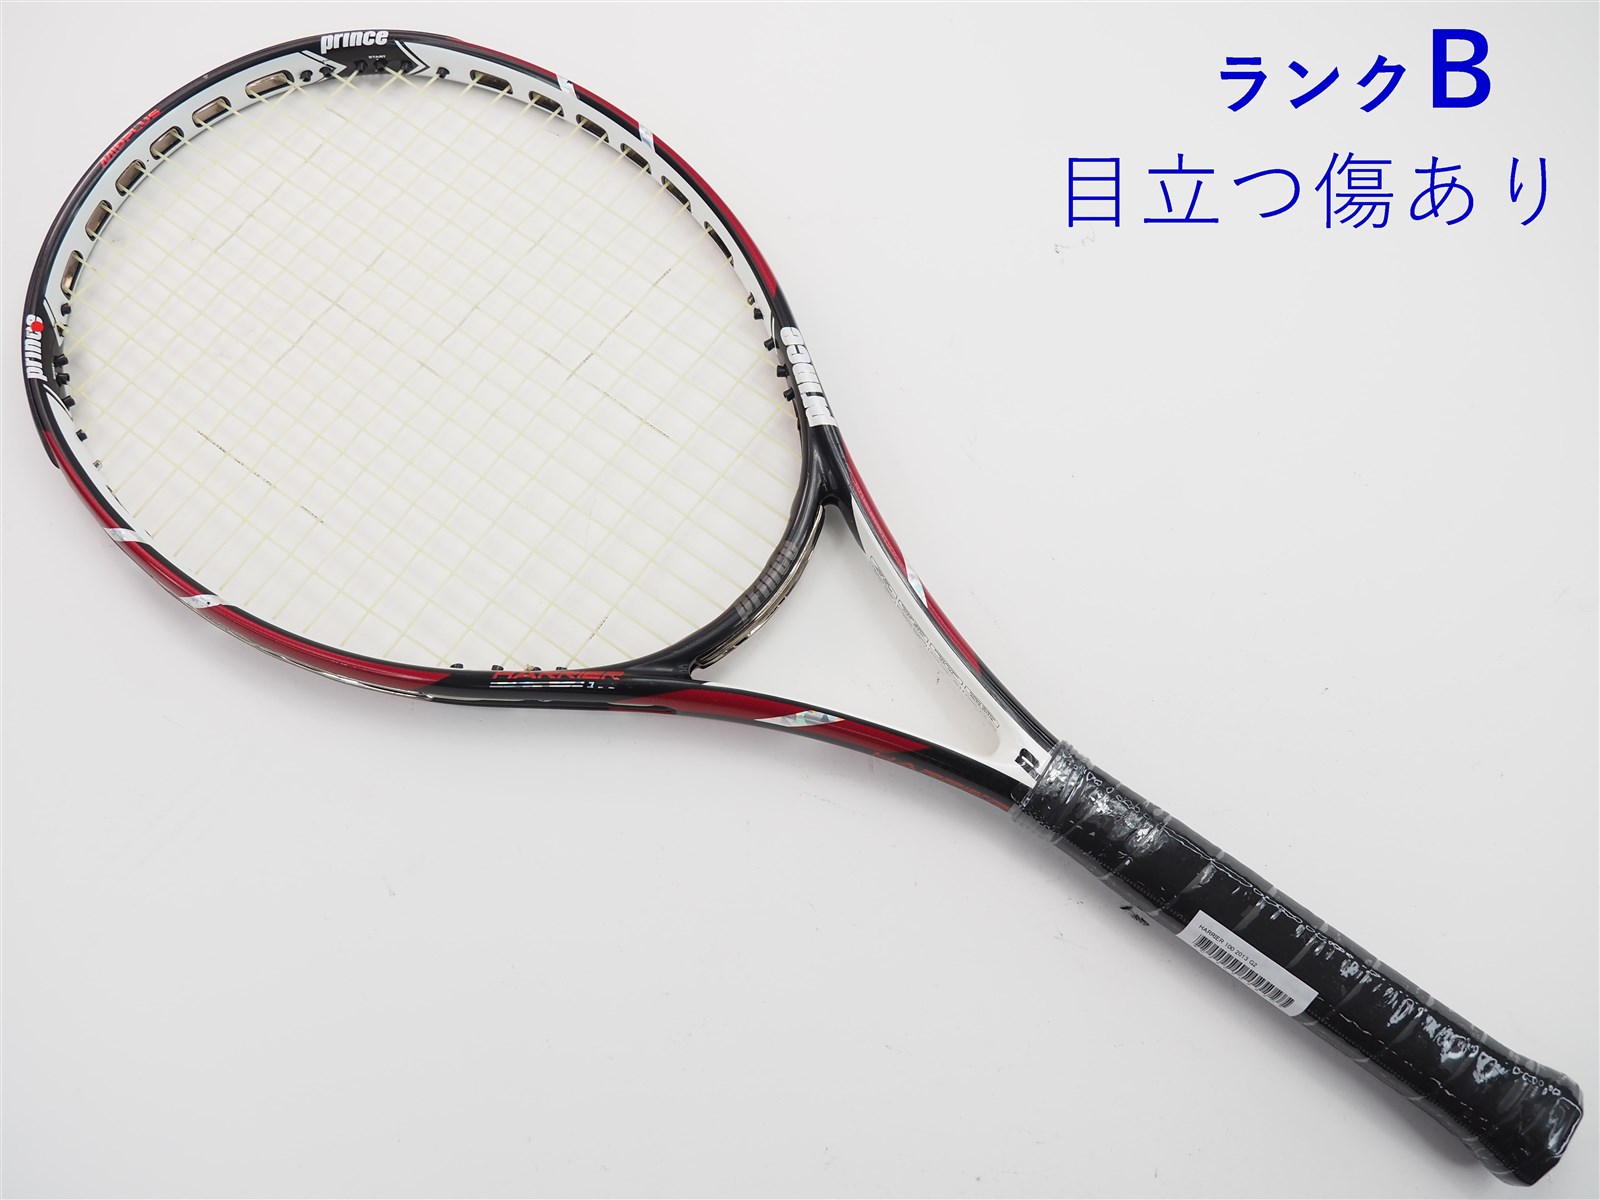 【中古】プリンス ハリアー 100 2013年モデルPRINCE HARRIER 100 2013(G2)【中古 テニスラケット】【送料無料